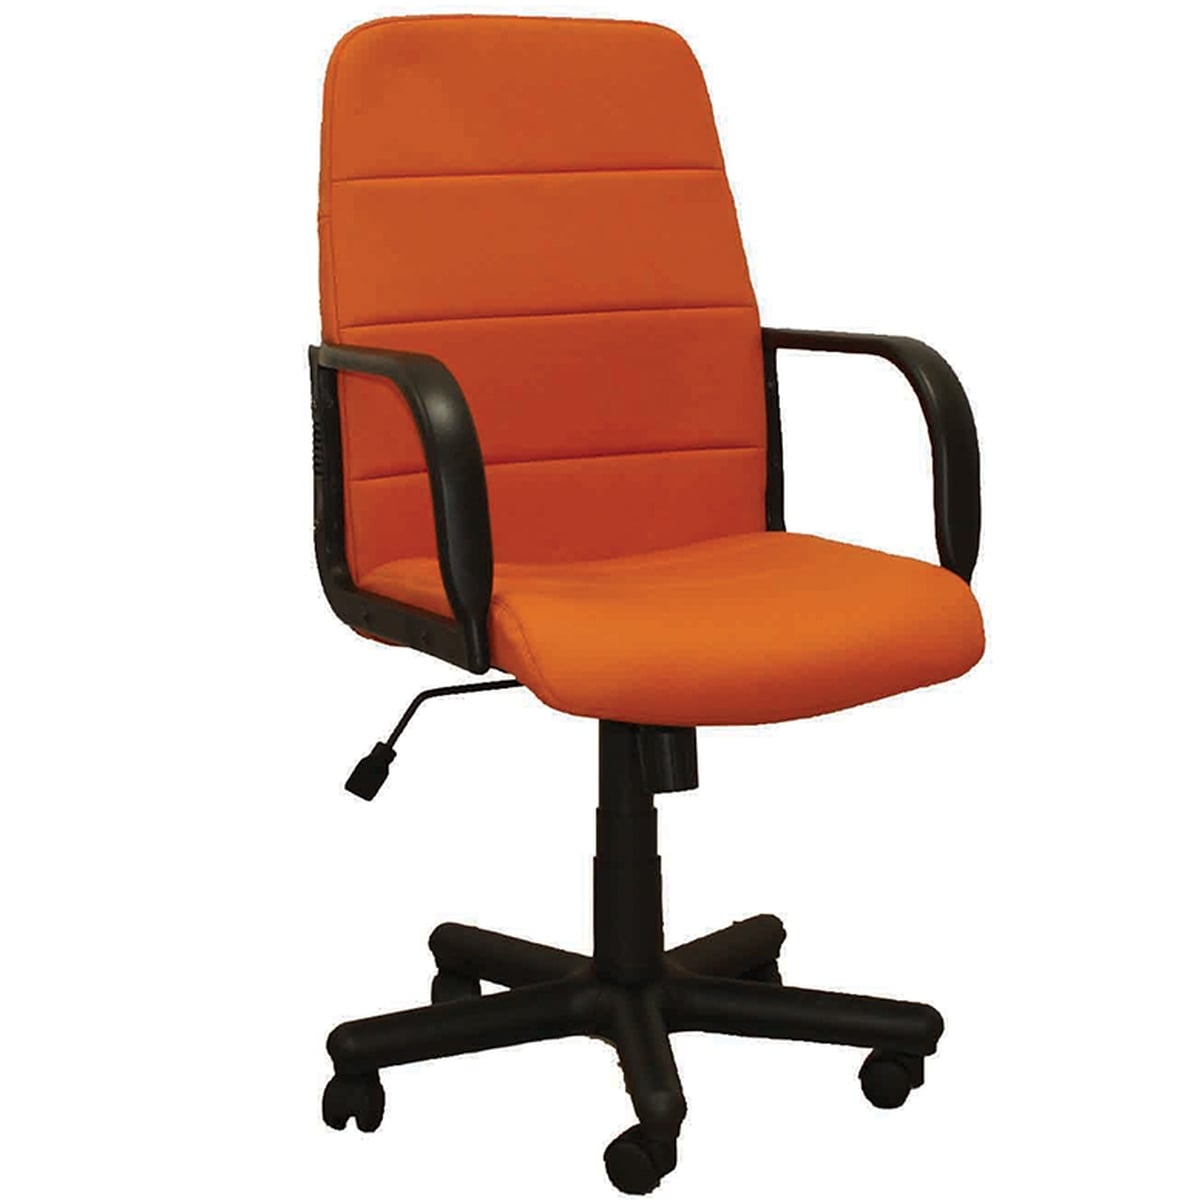 Работен офис стол - Booster оранжев